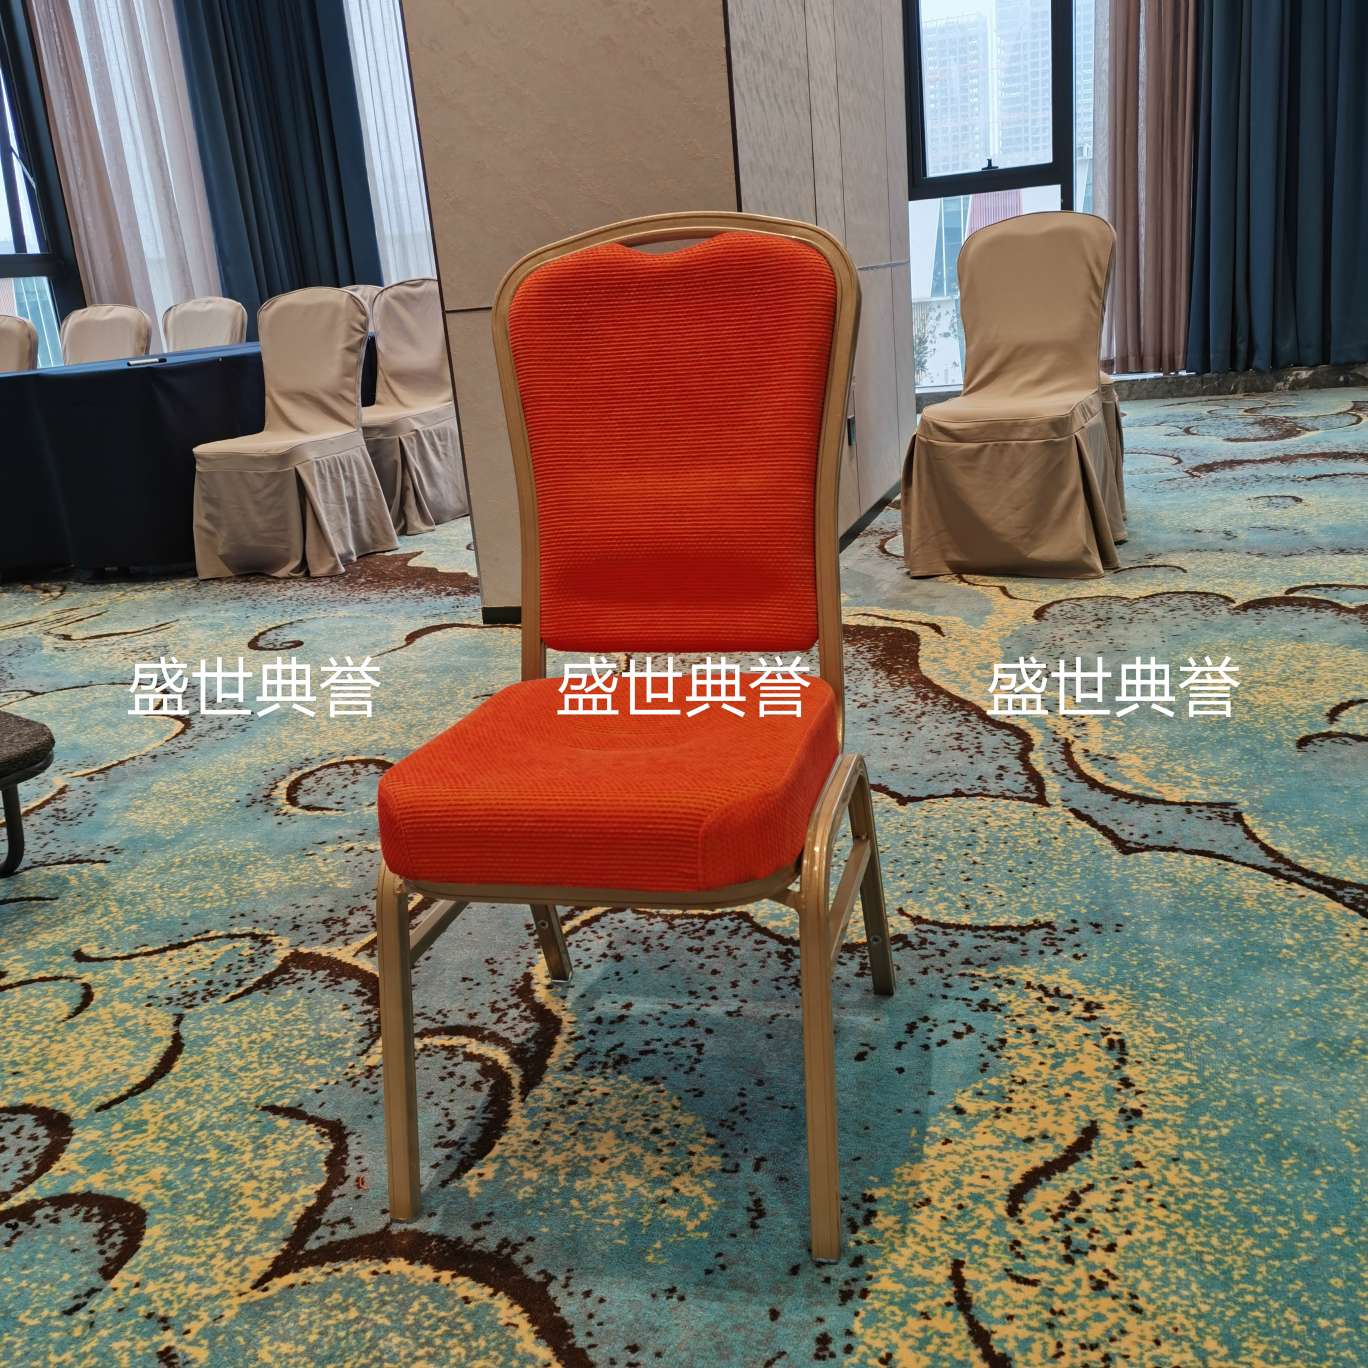 上海五星级酒店宴会厅家具国际会议中心铝合金宴会椅婚宴酒席铝椅细节图